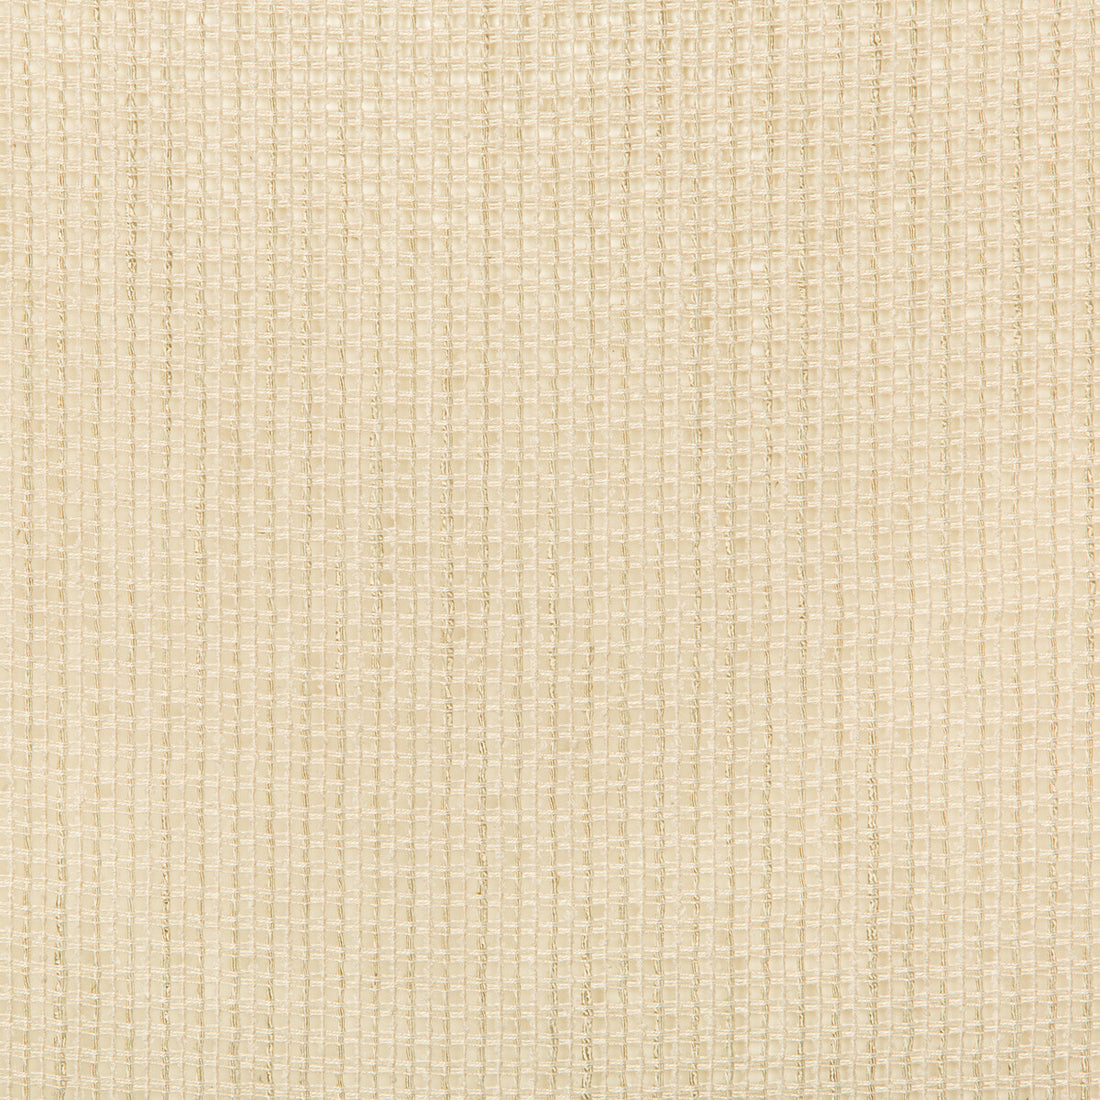 Kravet Basics fabric in 4717-16 color - pattern 4717.16.0 - by Kravet Basics